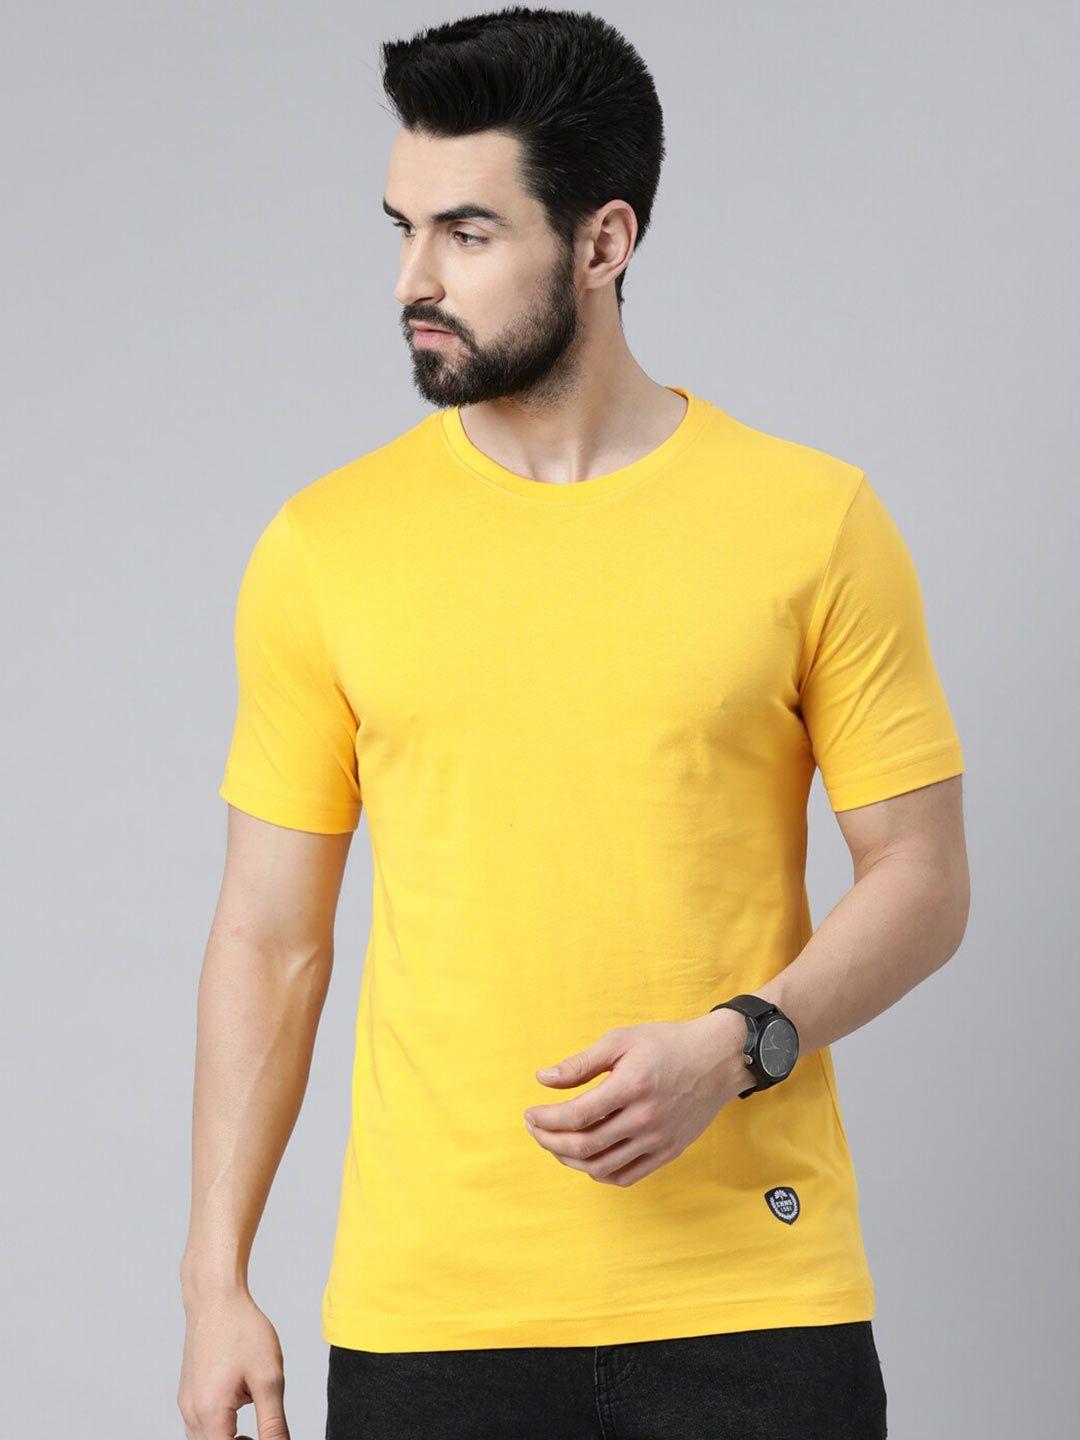 chennis men yellow slim fit round neck cotton t-shirt